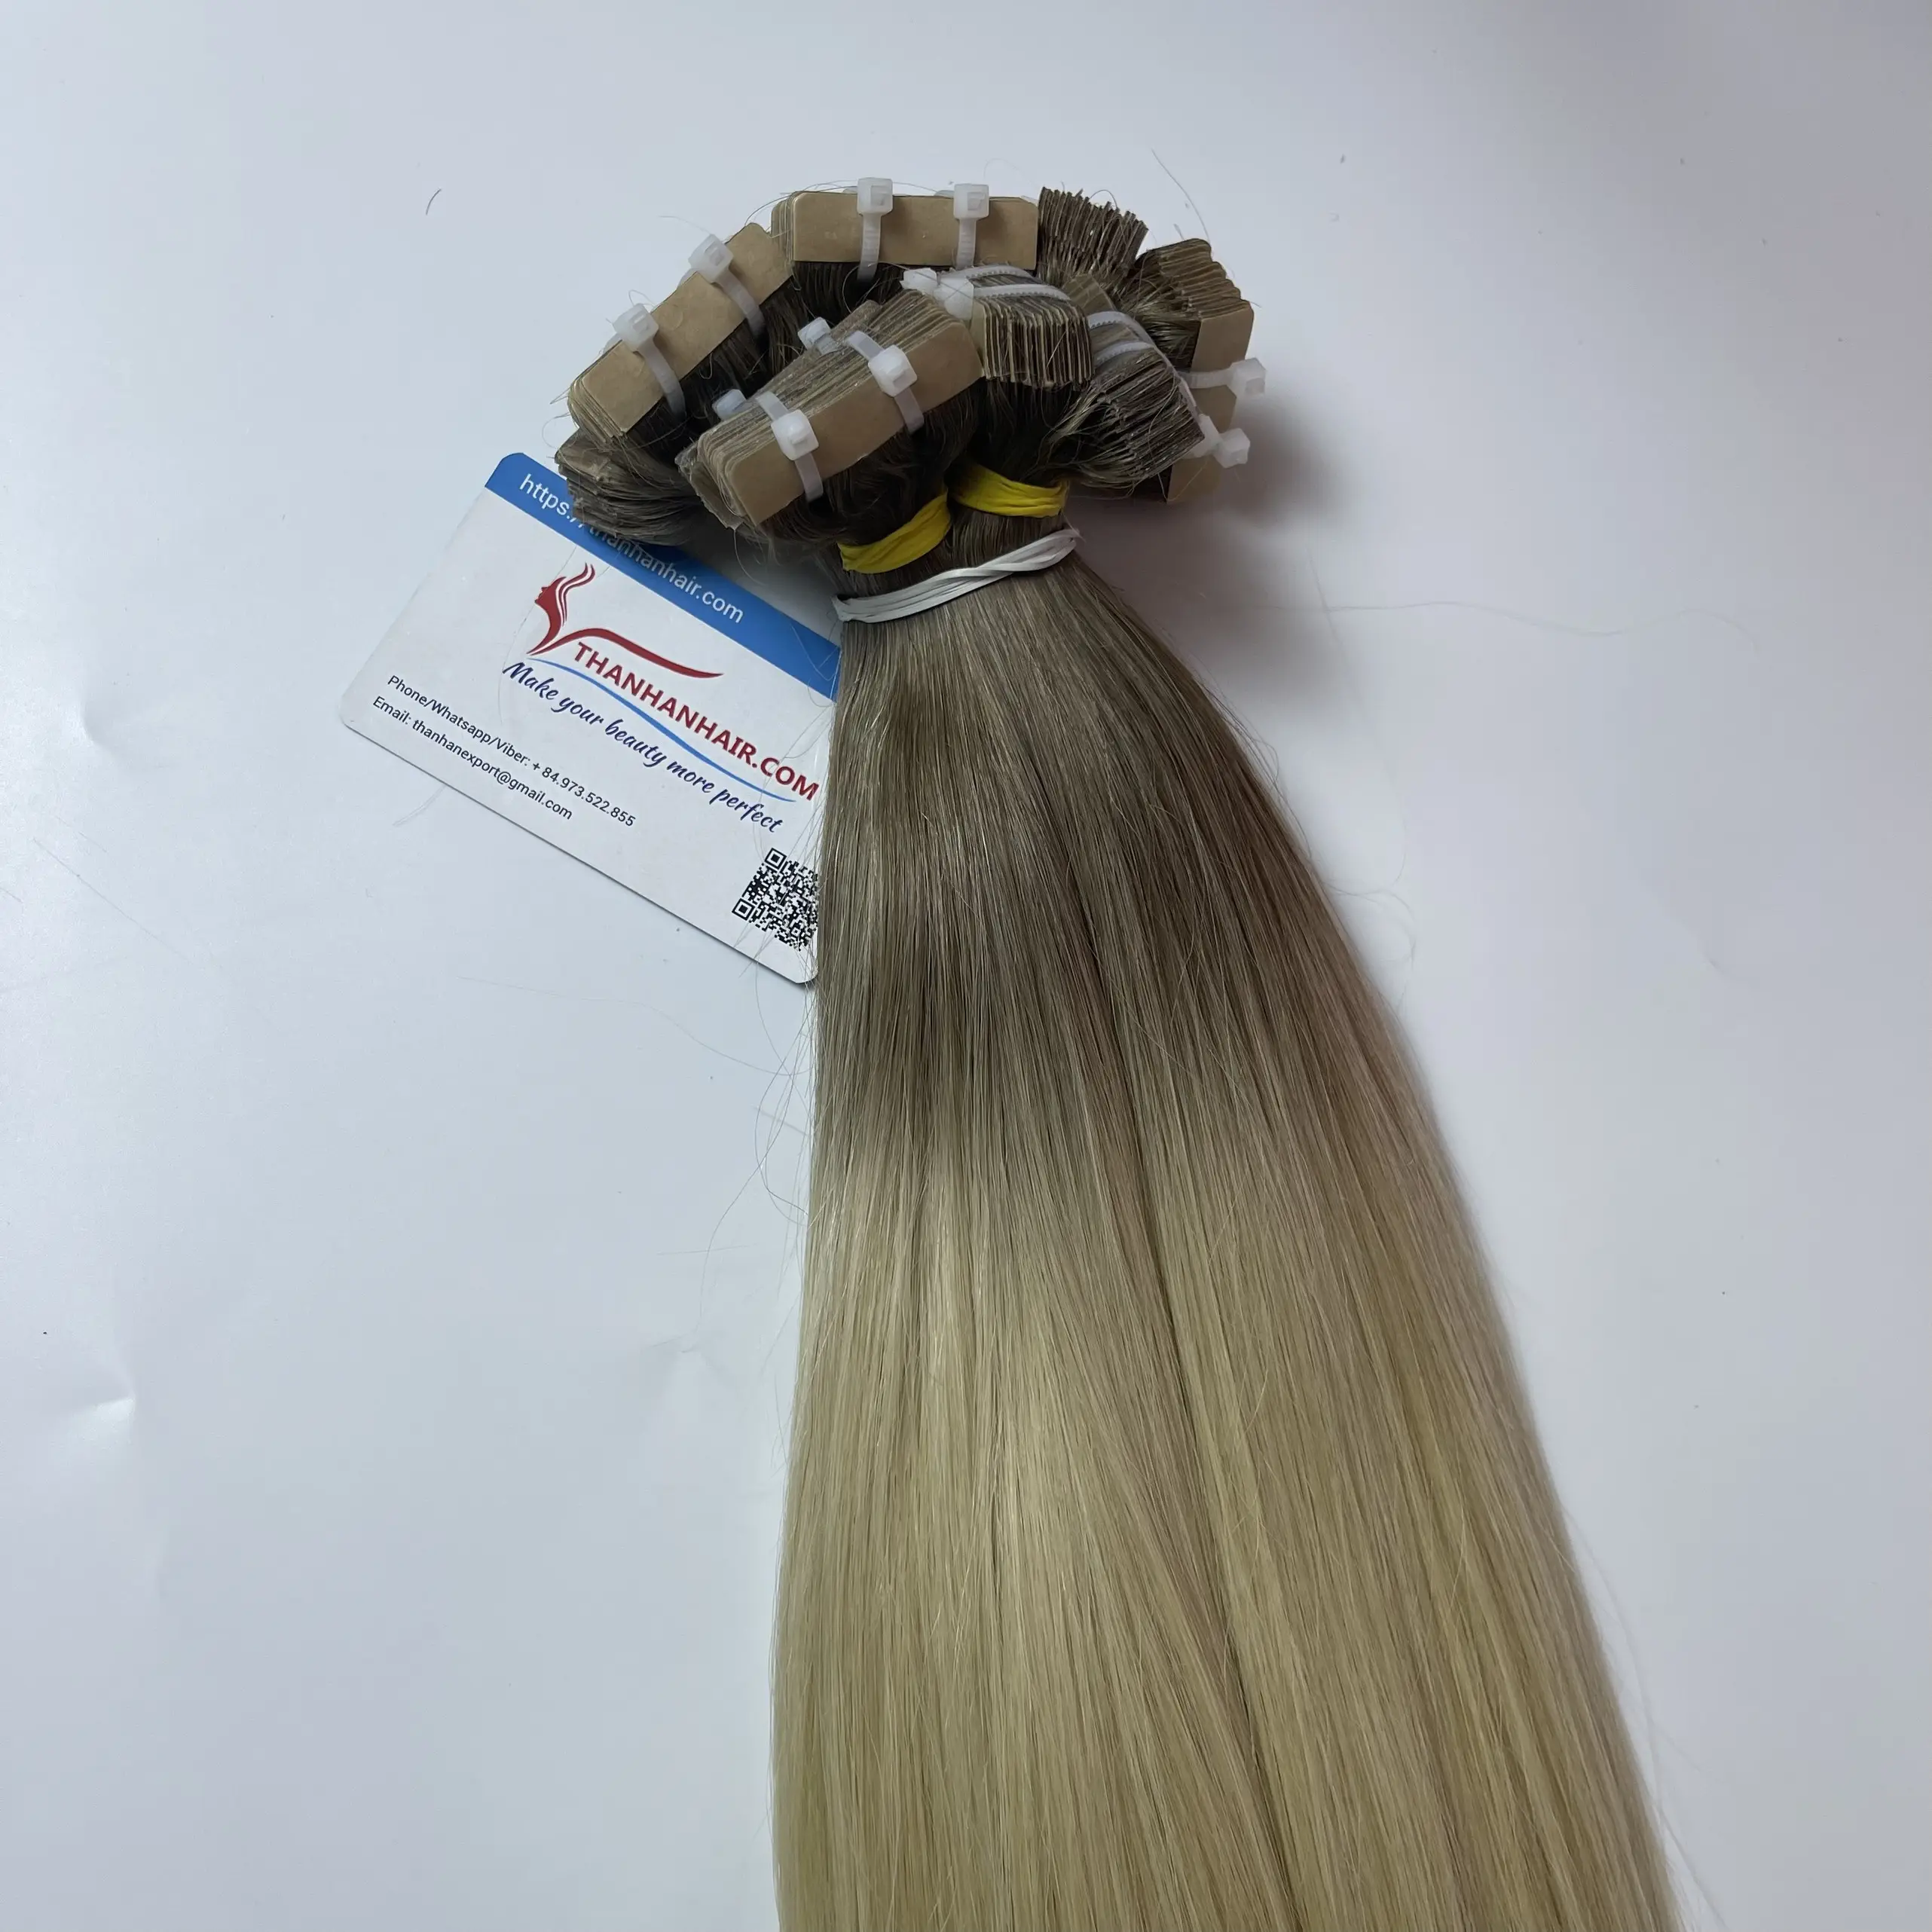 הנמכרים ביותר מצוירים כפולים 100% רמי תוספות שיער אנושי בסגנון ישר דגם N03 תוספות שיער סרט בלתי נראה מווייטנאם